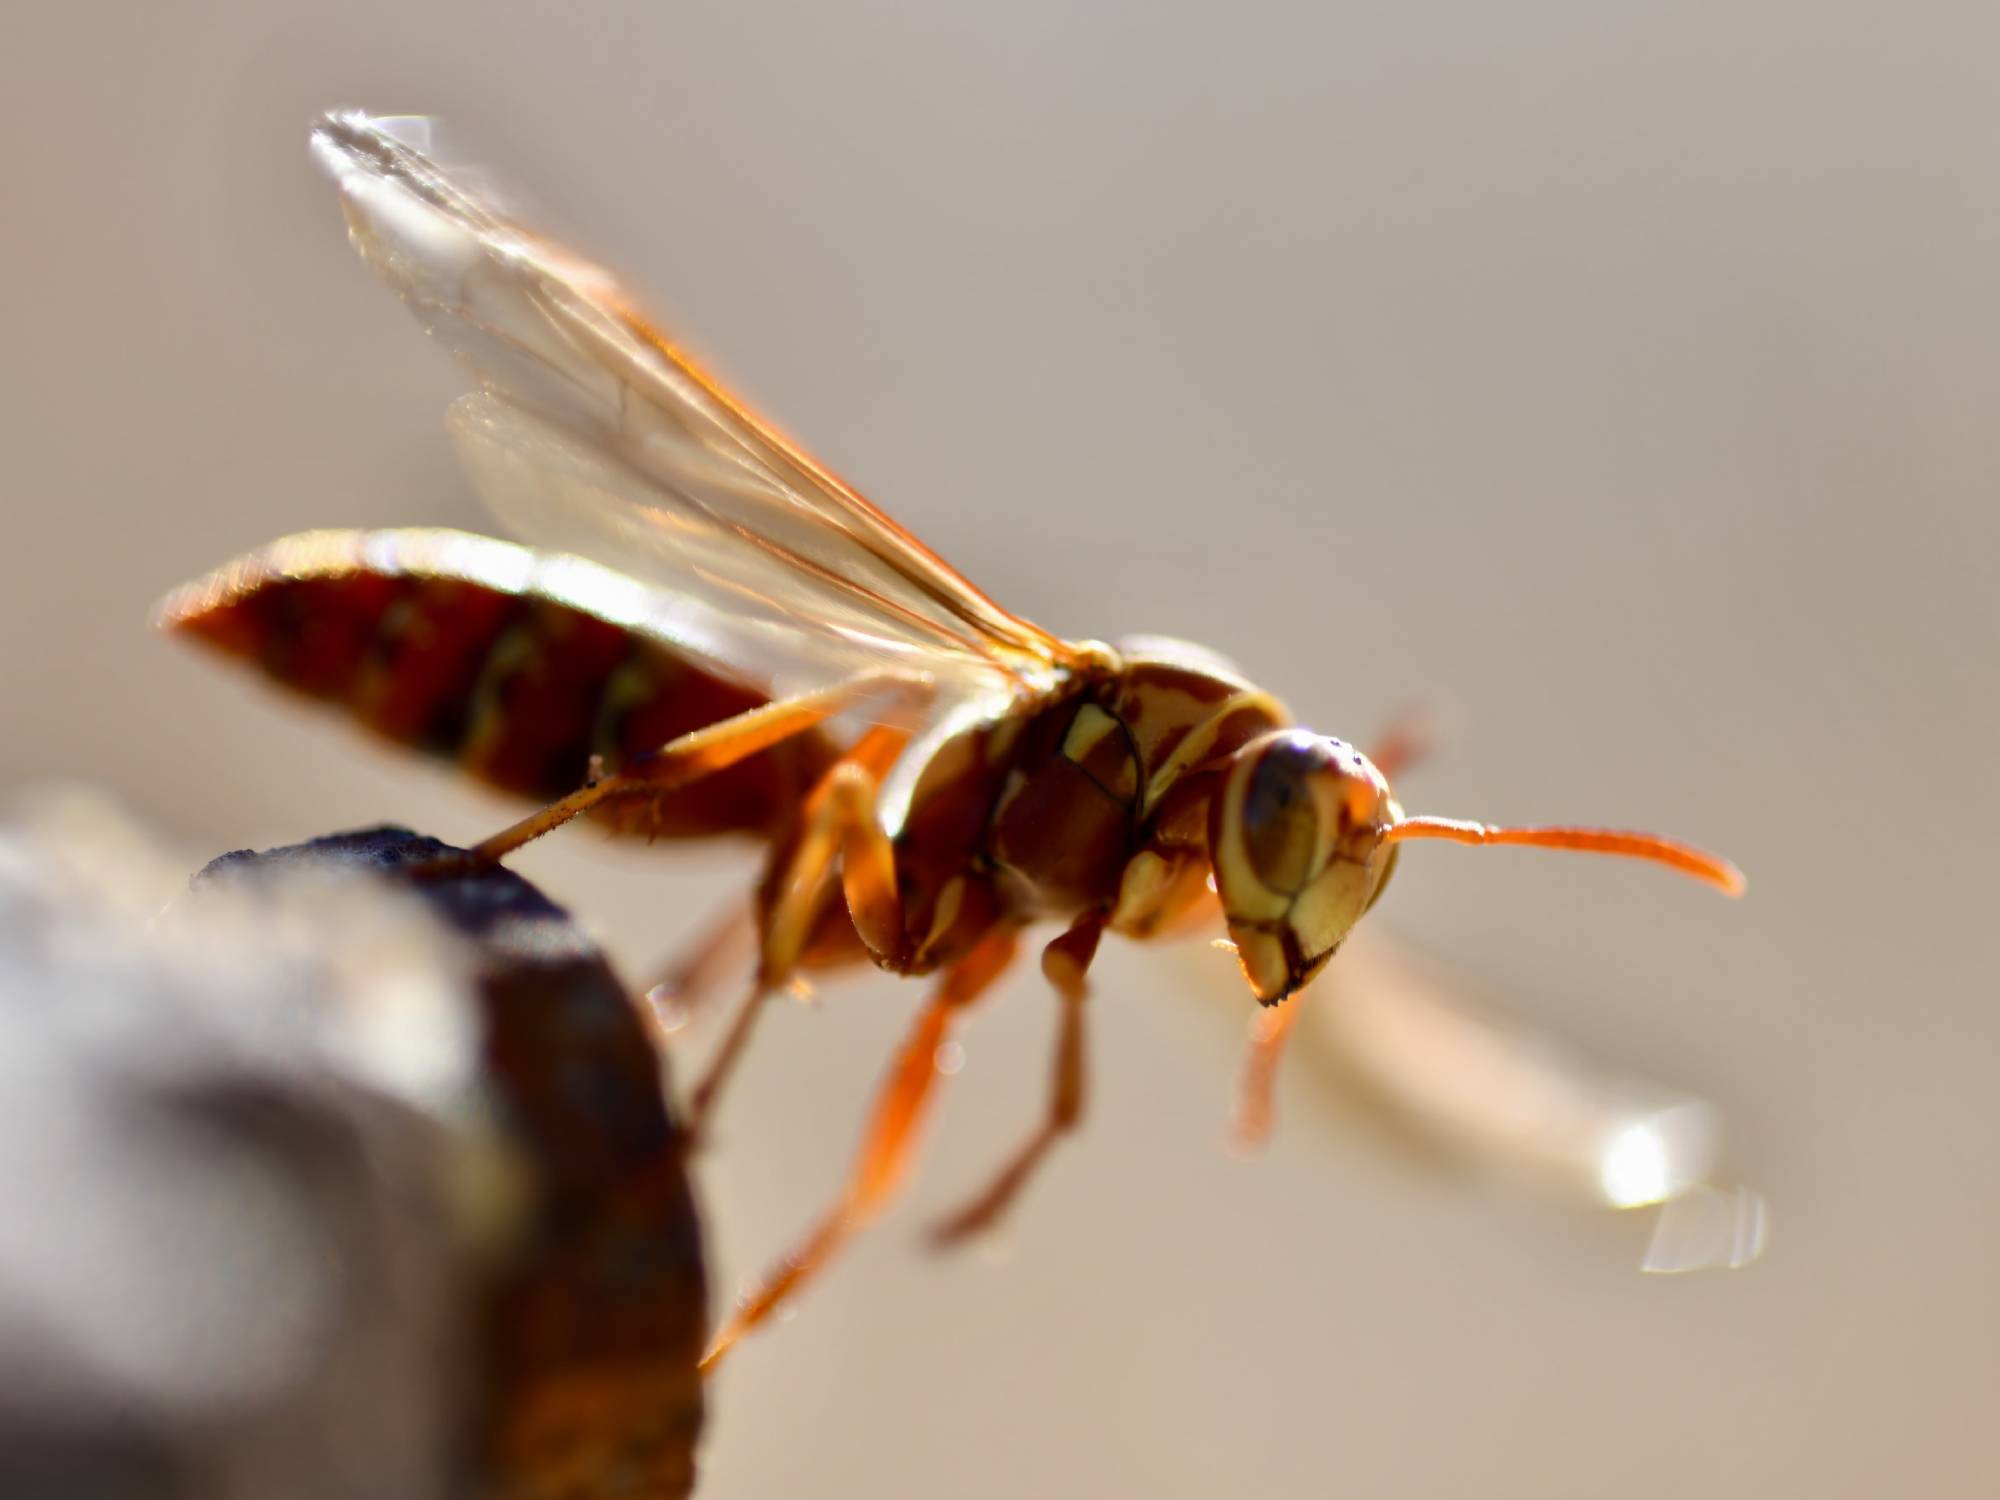 Close up image of a wasp